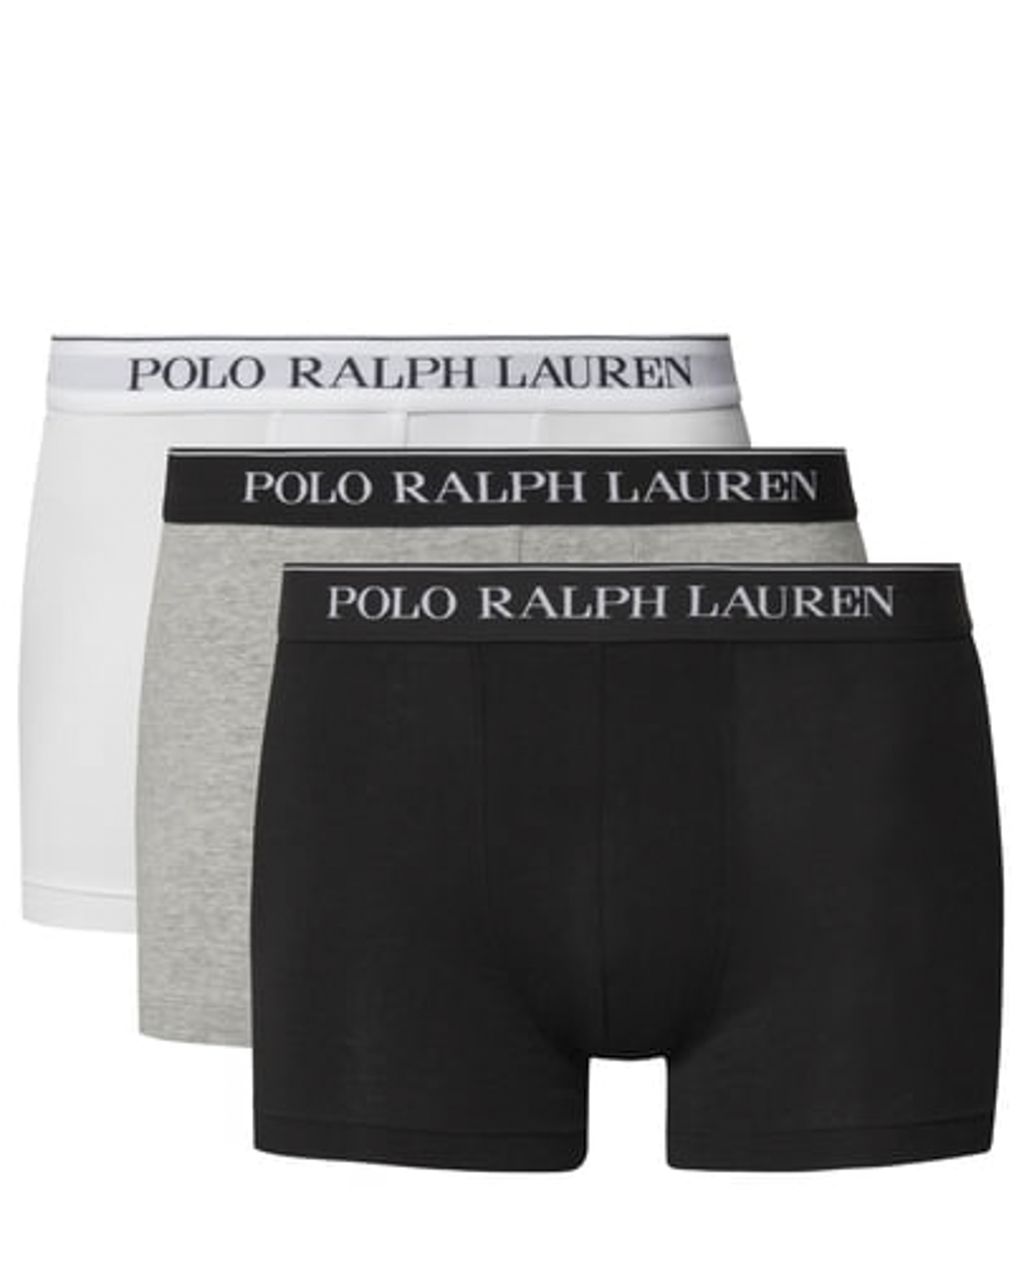 Polo Ralph Lauren - Boxershort Zwart 078601-001-L